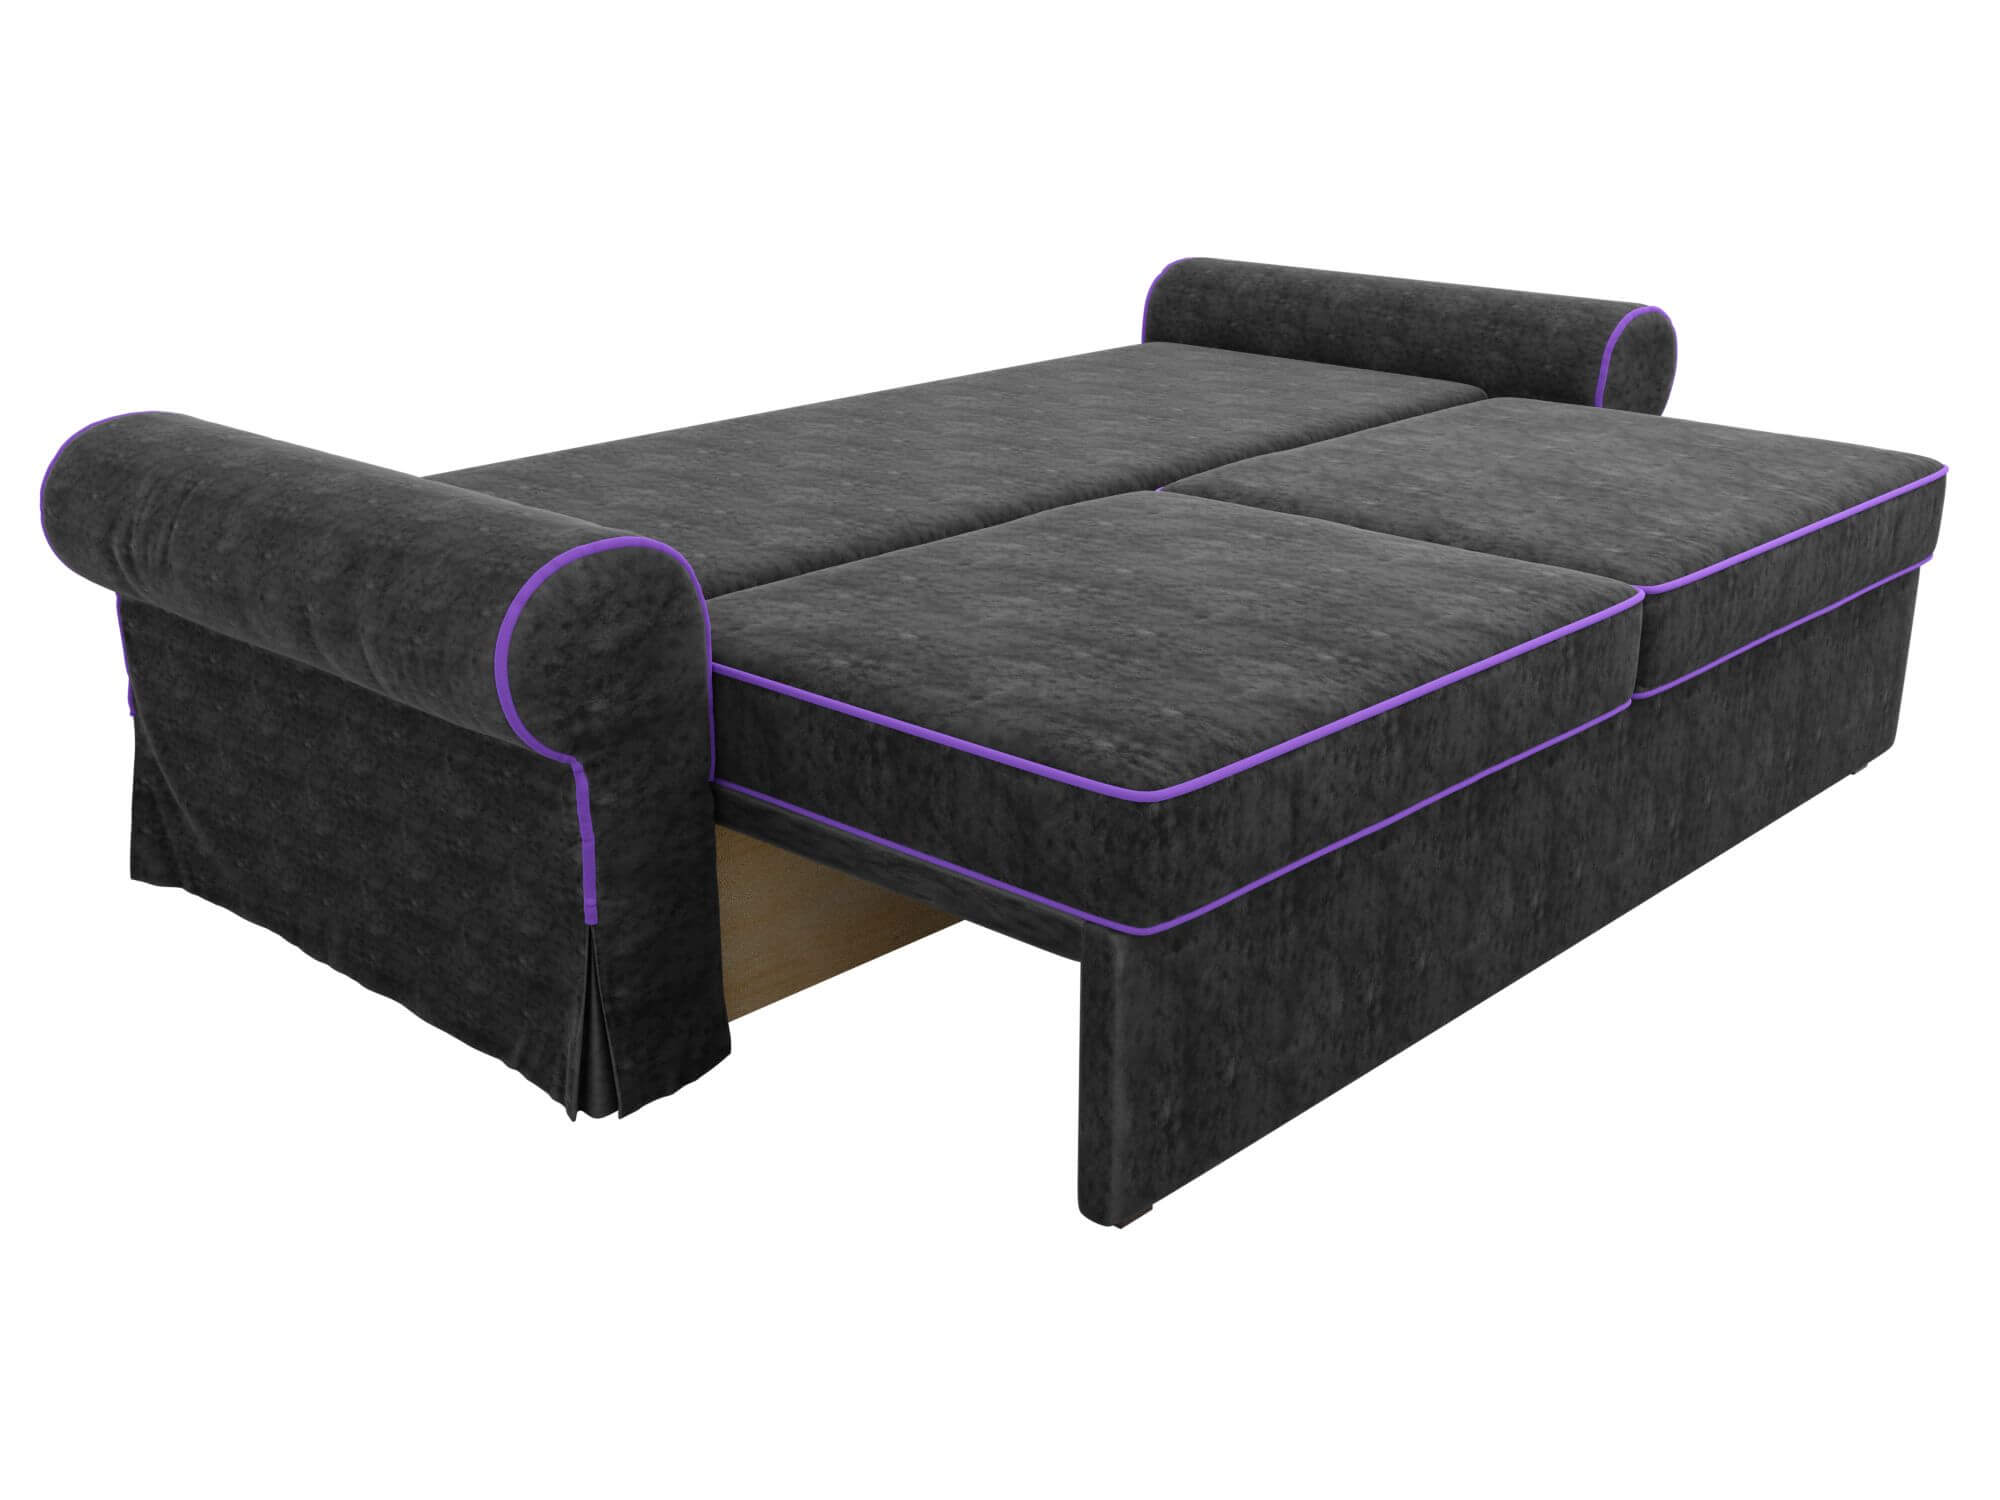 Диван с фиолетовыми подушками